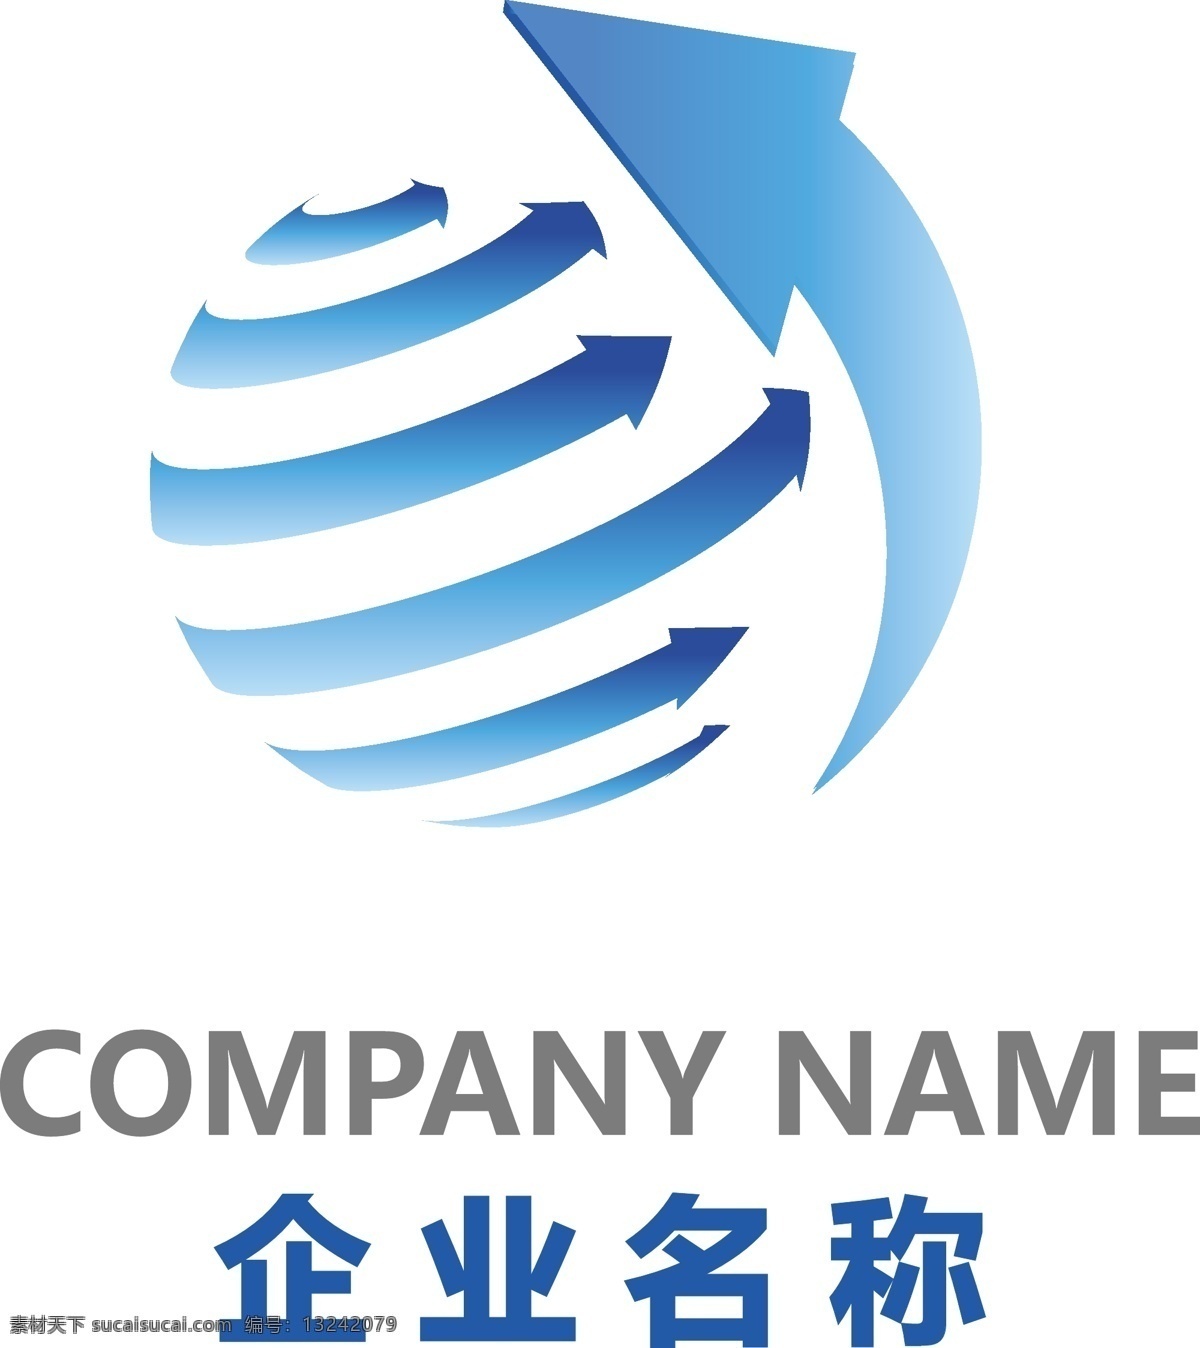 科技logo 科技感 箭头指向 蓝色渐变 立体球体 互联网元素 标志图标 企业 logo 标志